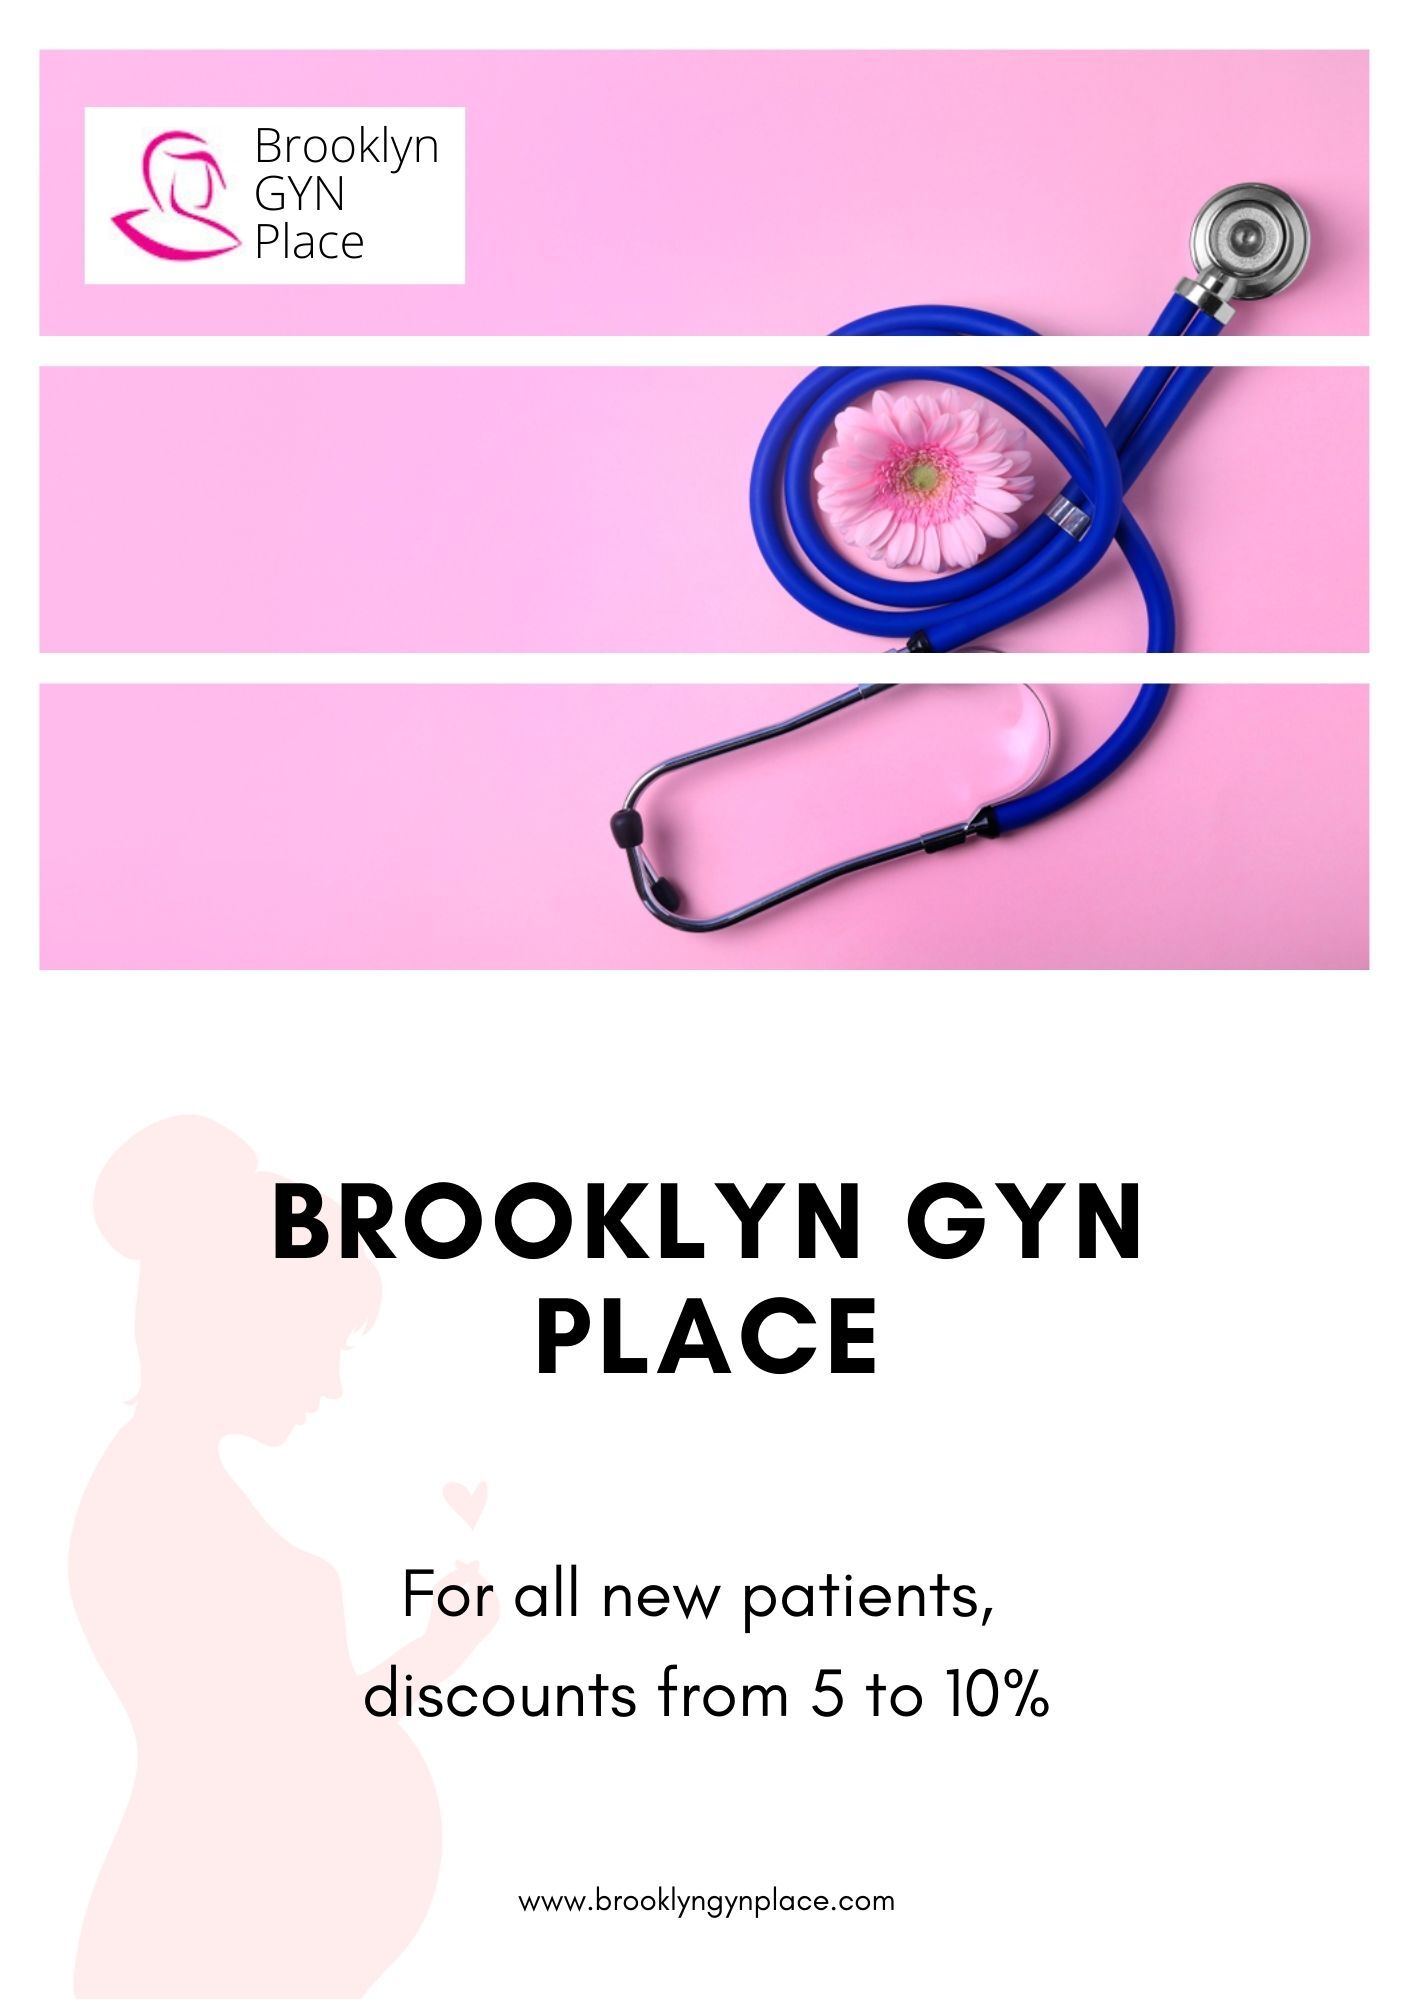 Brooklyn GYN Place - Brooklyn Heights, NY, US, gynecologist